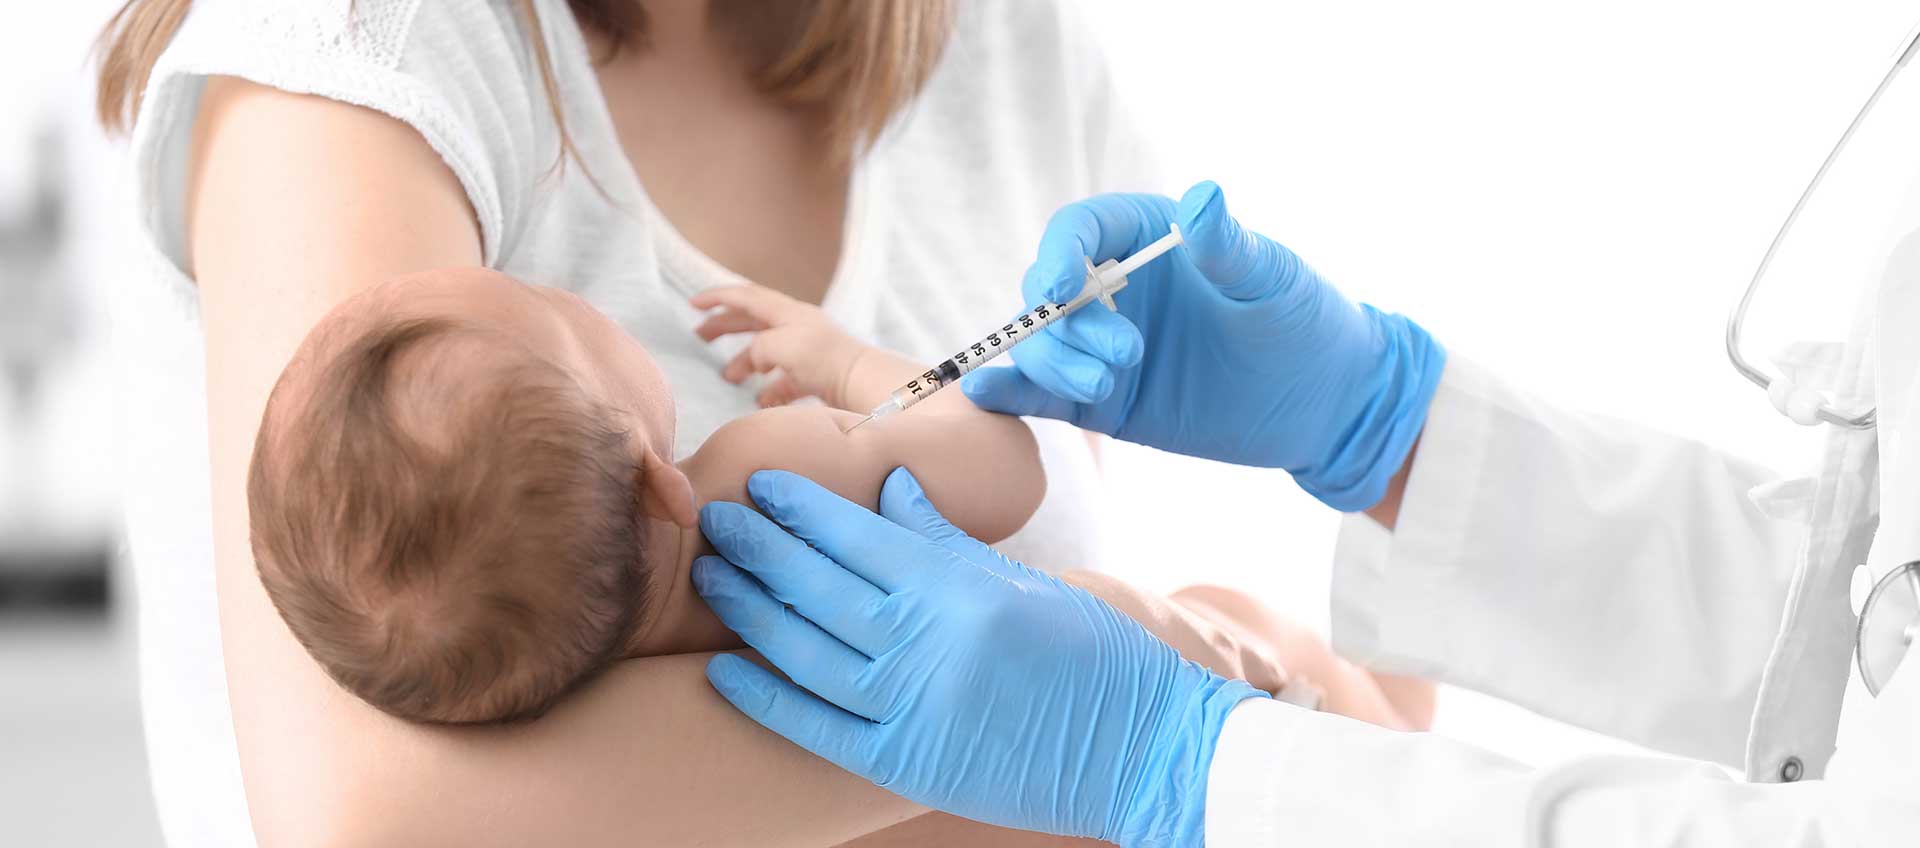 Un bébé dans les bras de sa mère se fait vacciner